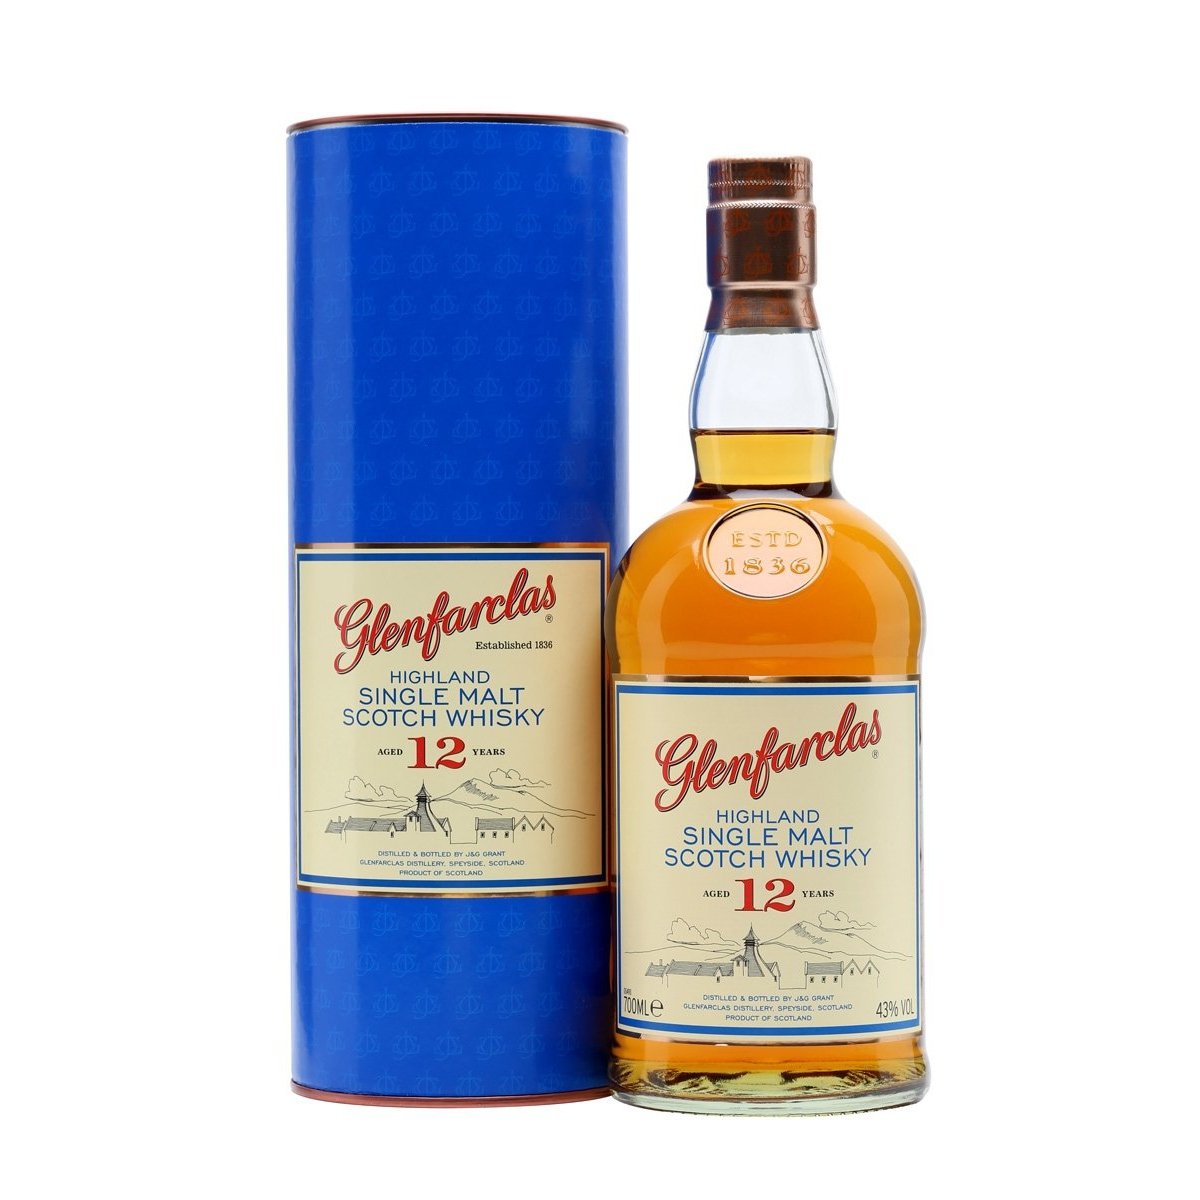 Glenfarclas 12 Years Old Highland Single Malt Scotch Whisky 43% Vol. 0,7l in Giftbox